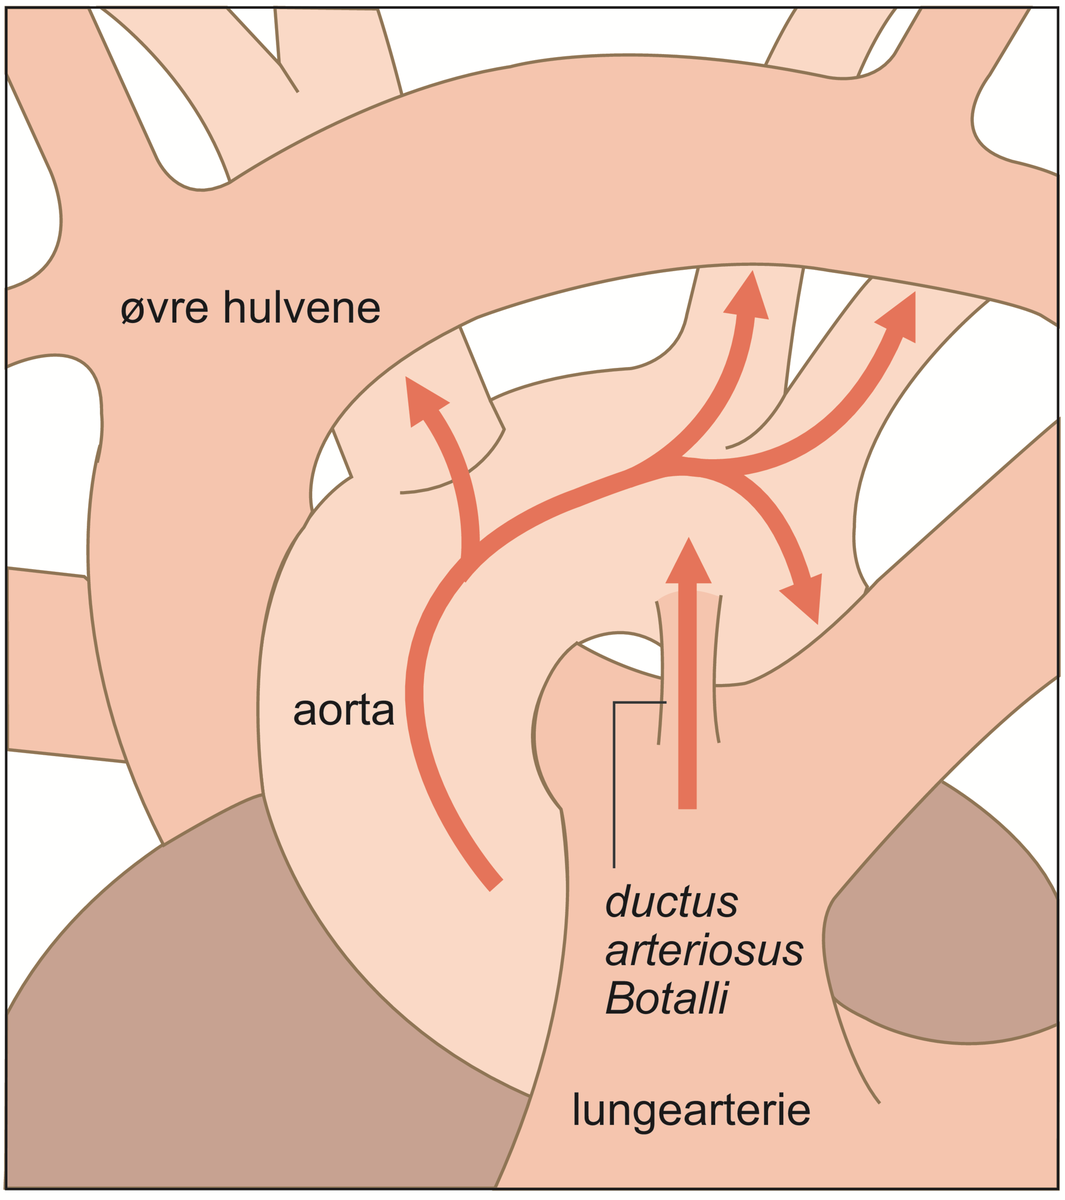 Ductus arteriosus Botalli